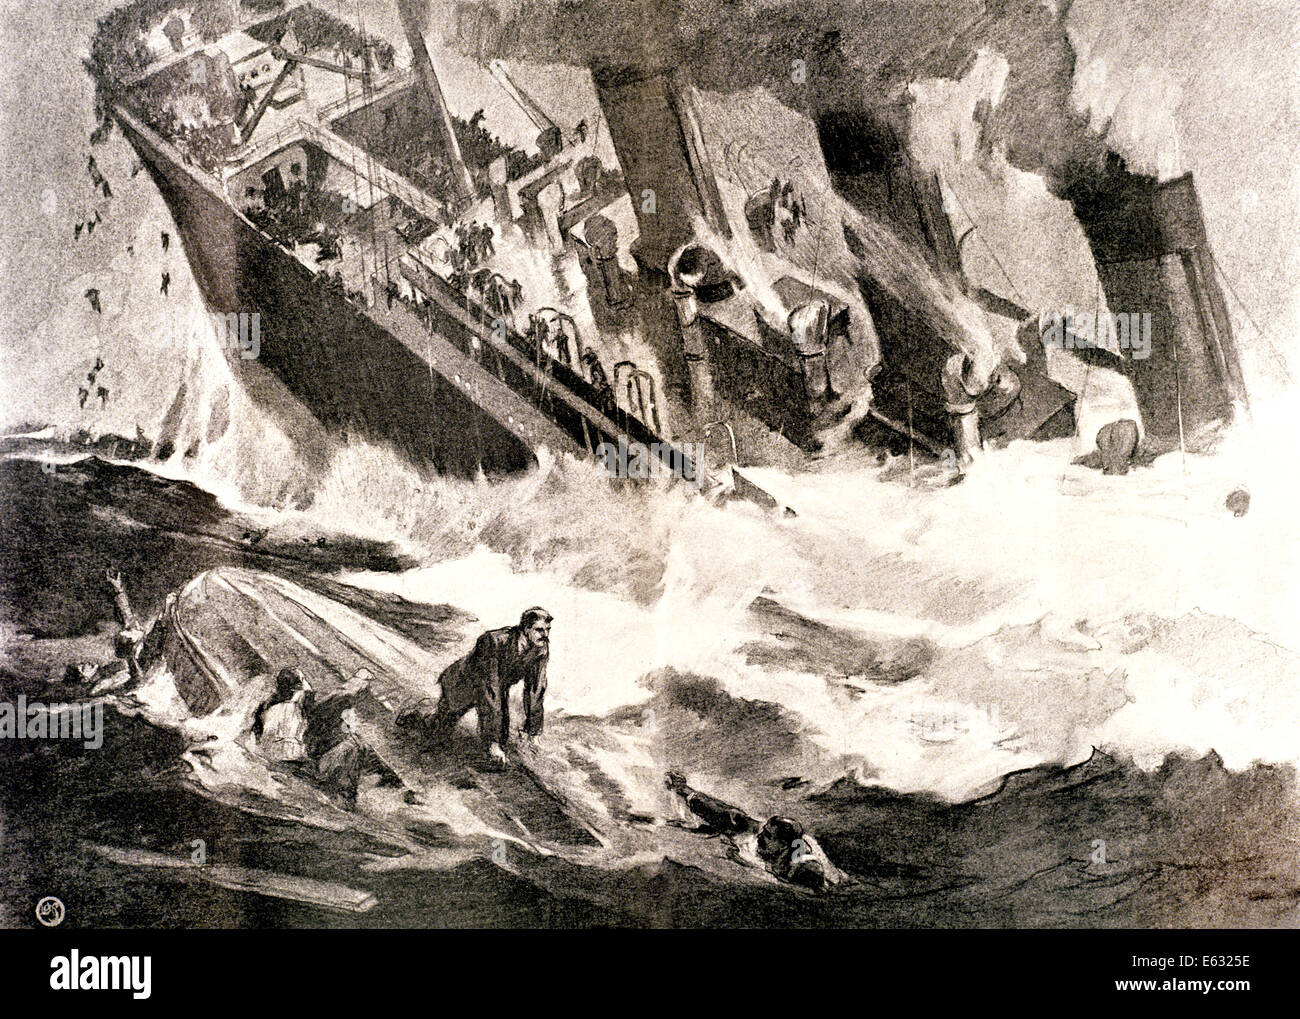 1900 S 15. APRIL 1912 HARPERS WÖCHENTLICH ZEICHNUNG DES UNTERGANGS DER TITANIC OZEANRIESEN Stockfoto